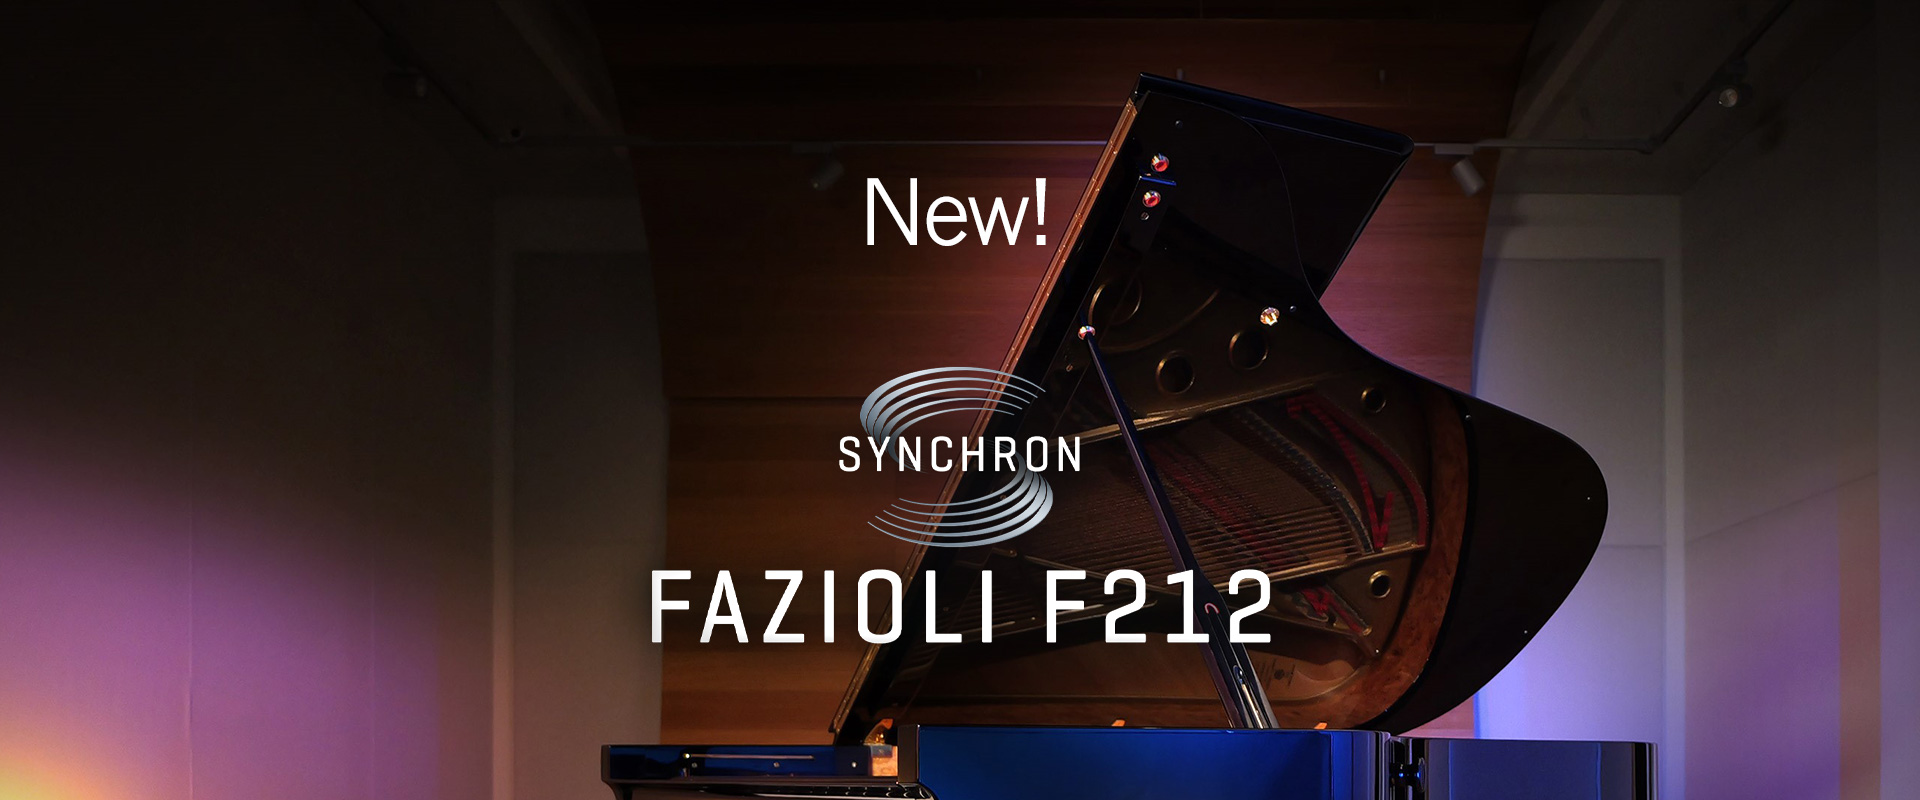 Fazioli F212